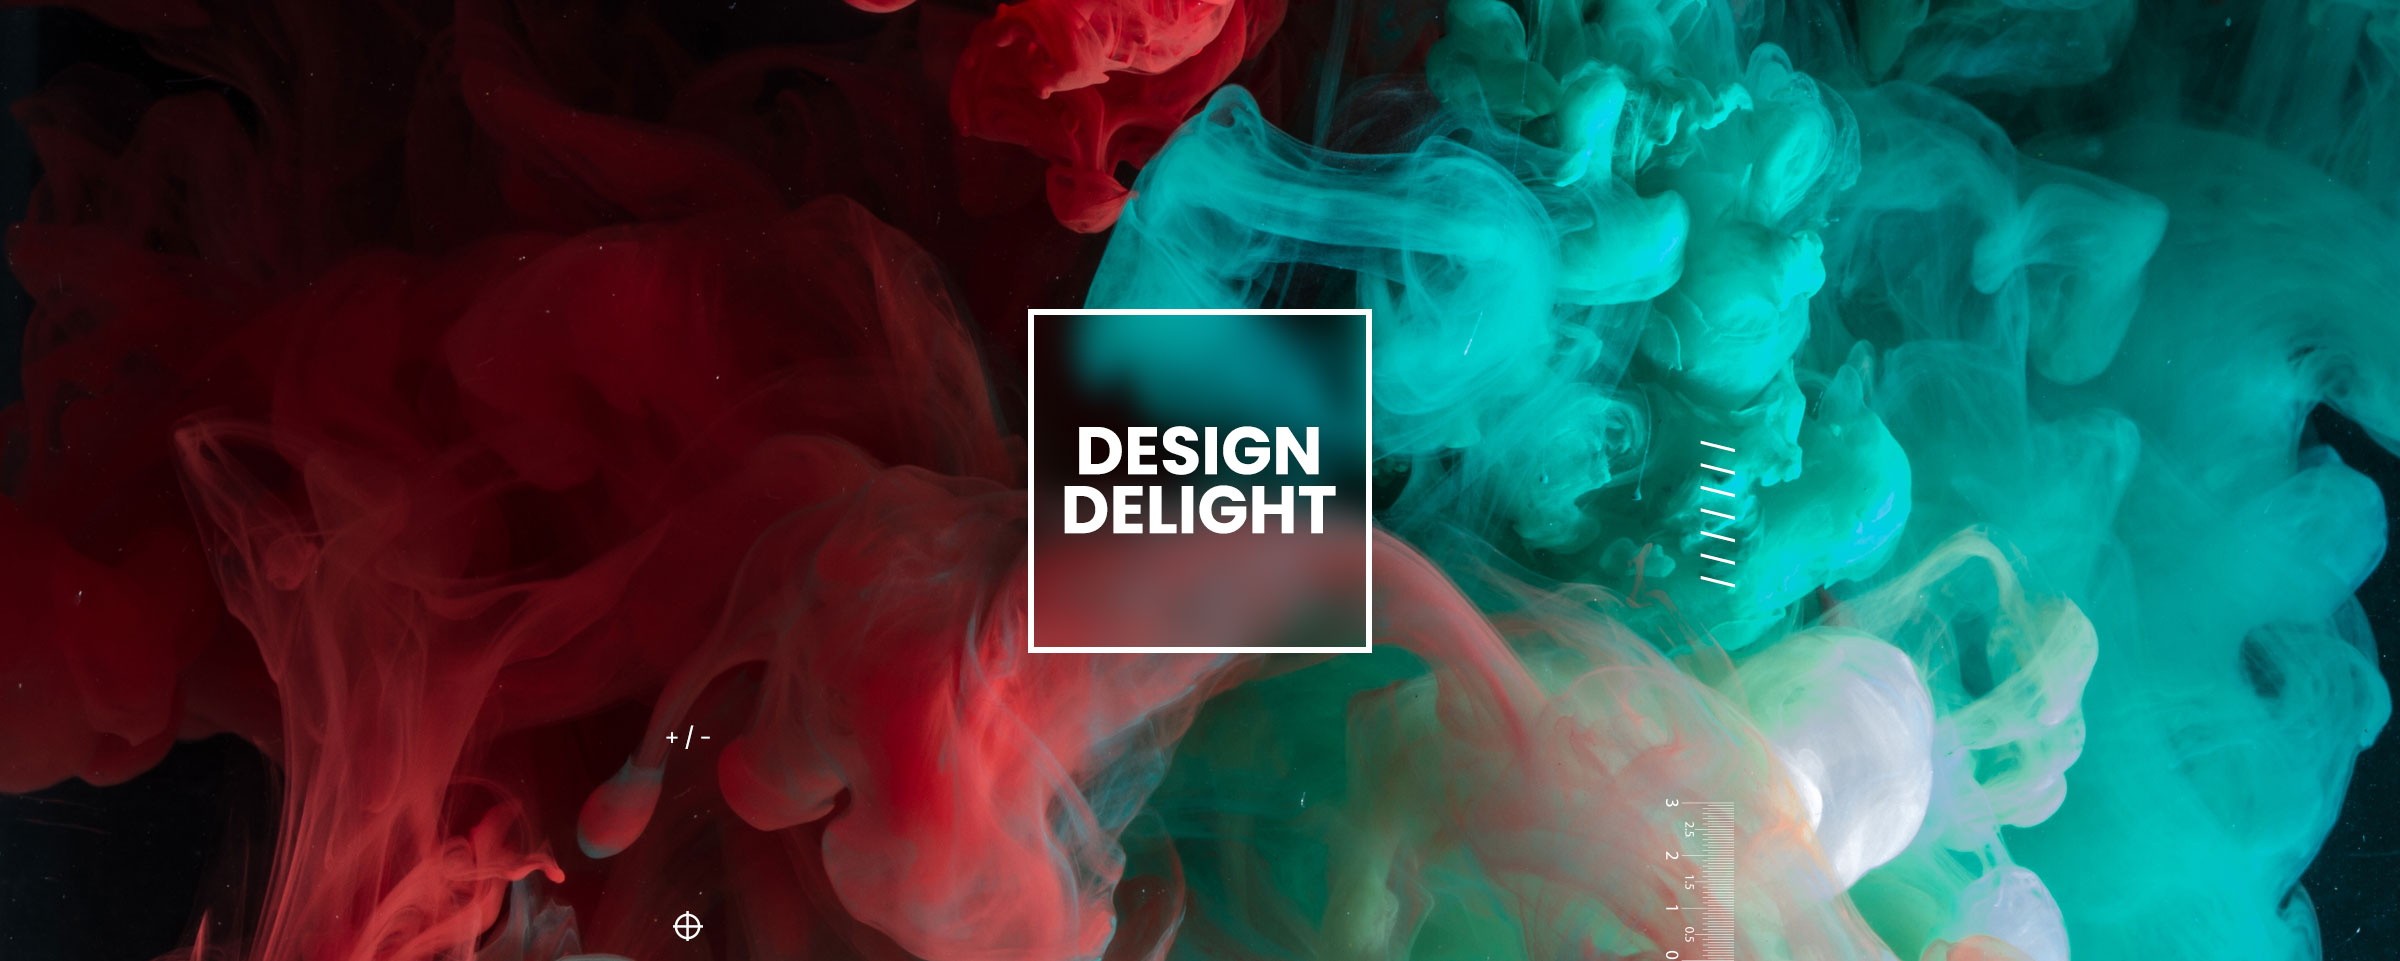 Design Delight